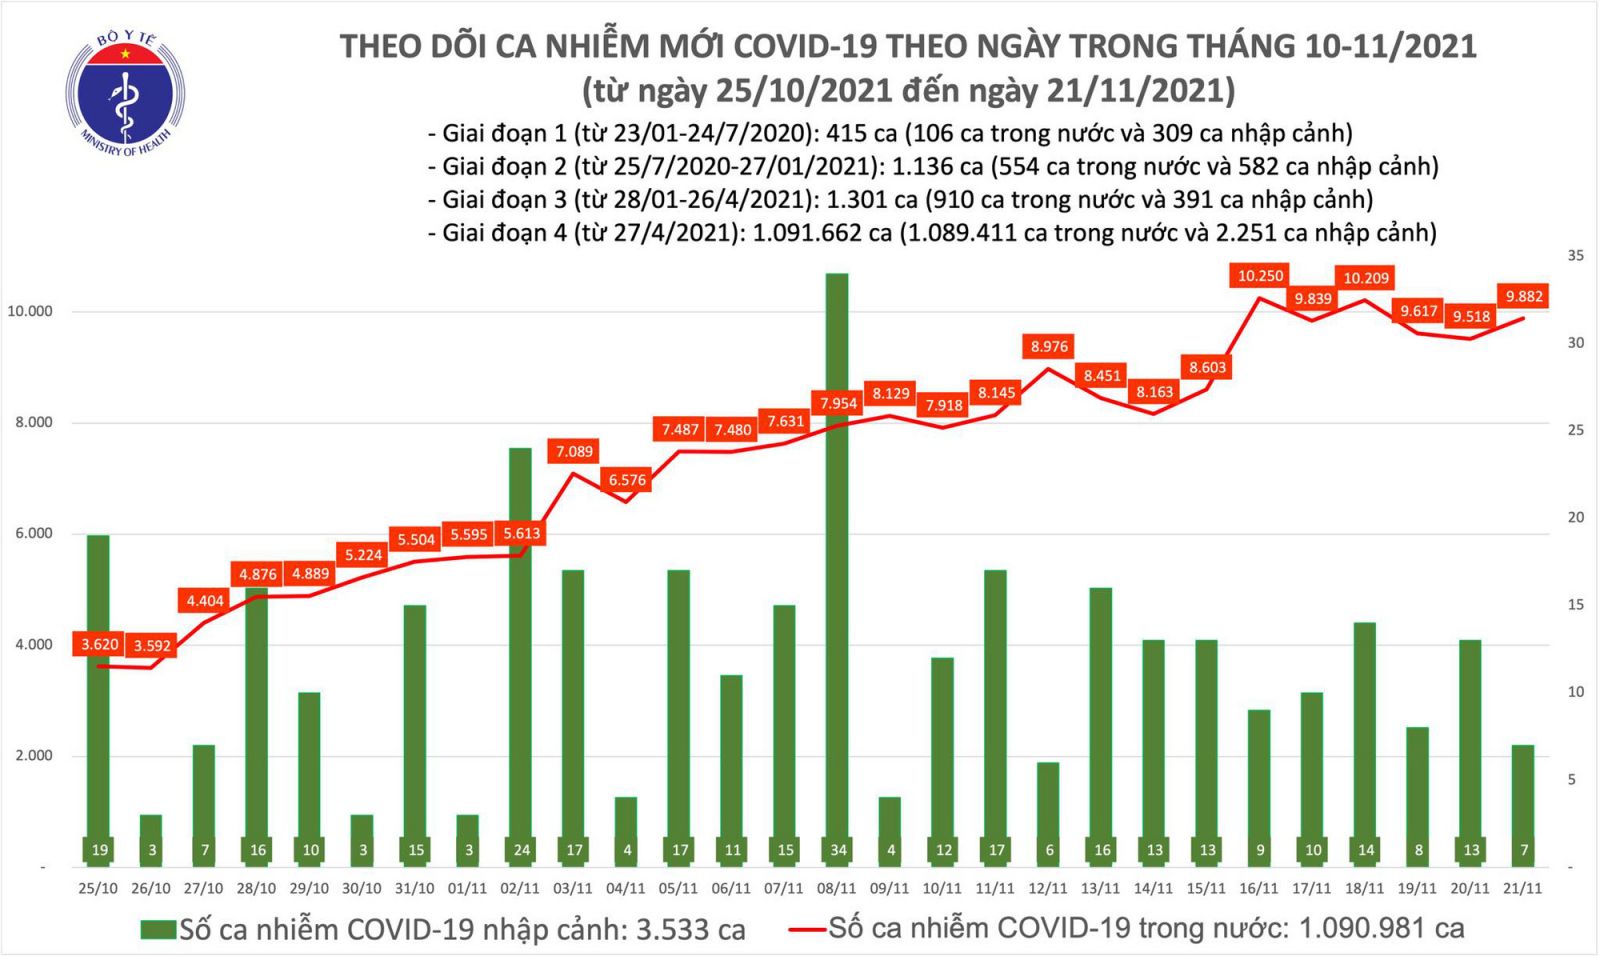 Ngày 21/11: Có 9.889 ca mắc COVID-19 tại 57 tỉnh, thành; số tử vong giảm nhiều so với hôm qua